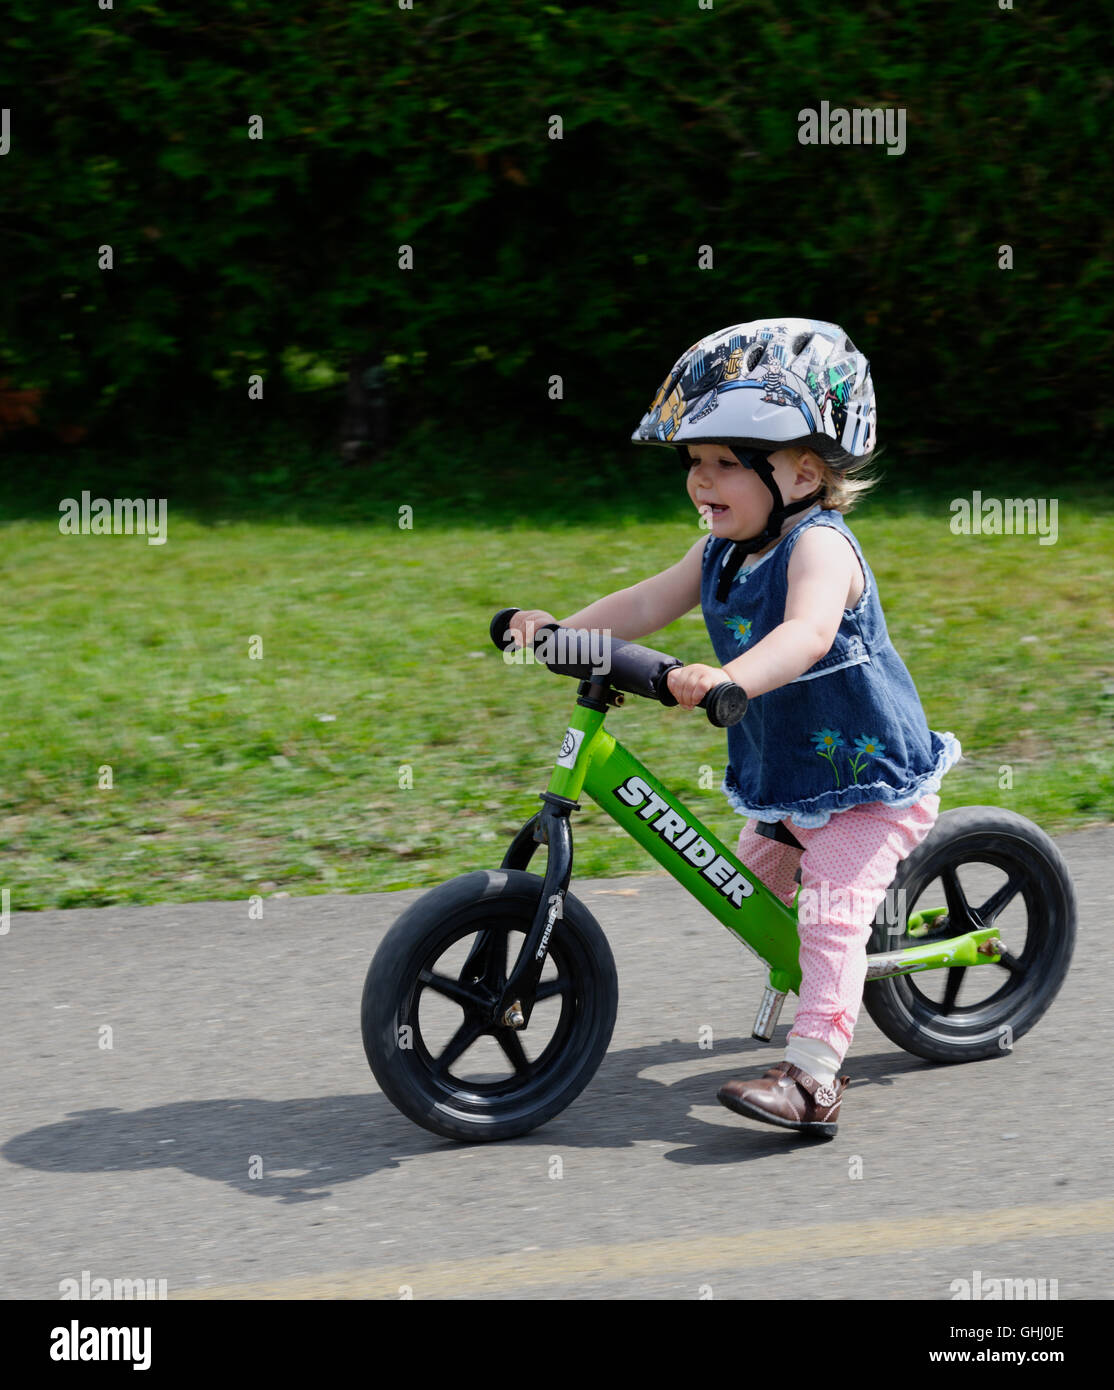 balance bike for 2 year old girl